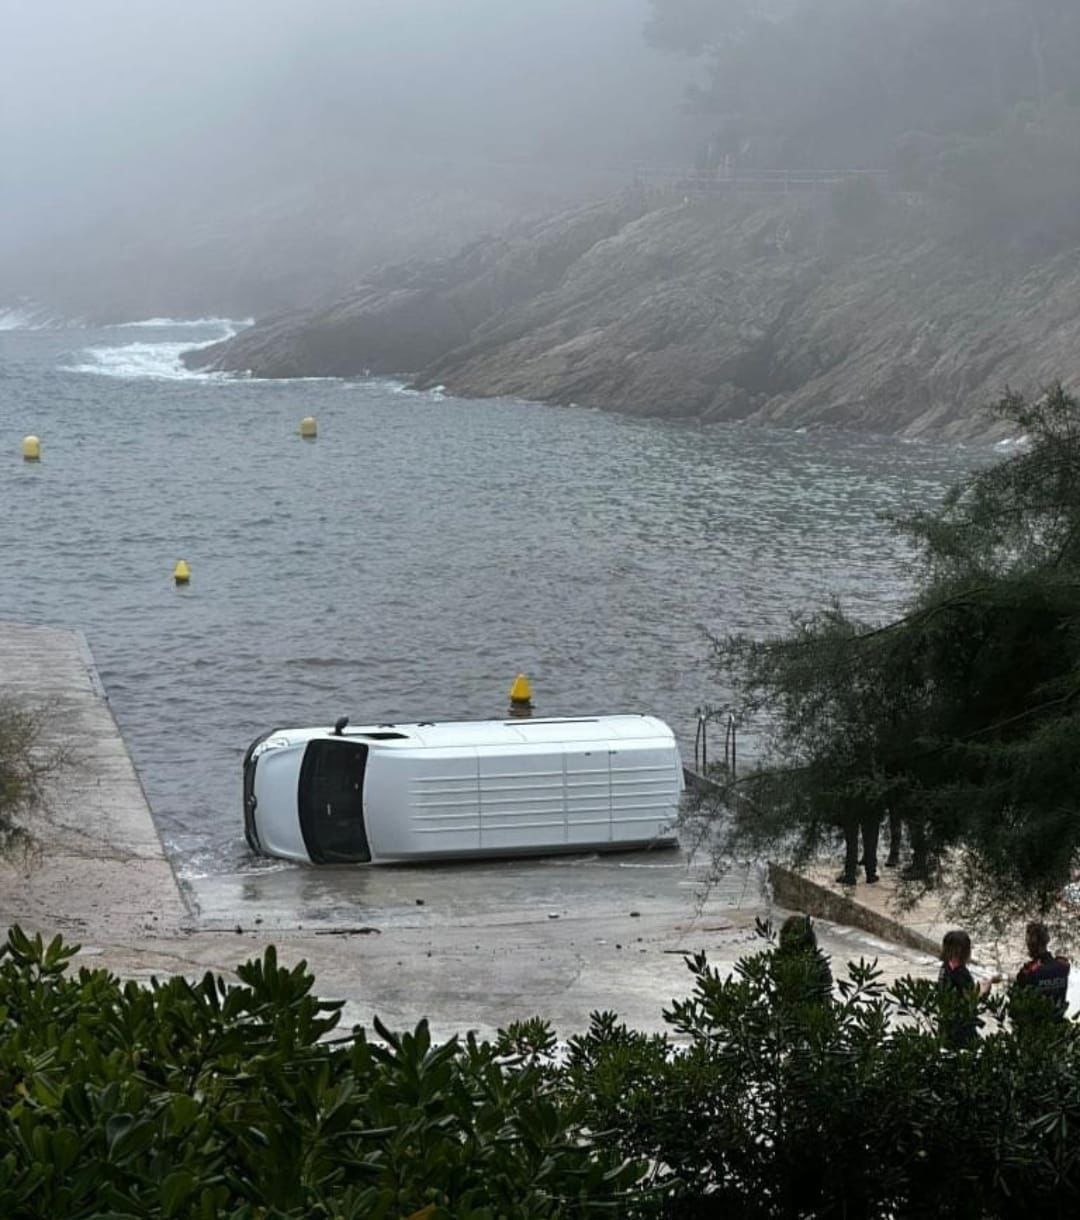 Apareix una furgoneta amb 2.300 quilos d'haixix i mig bolcada dins l'aigua a Begur